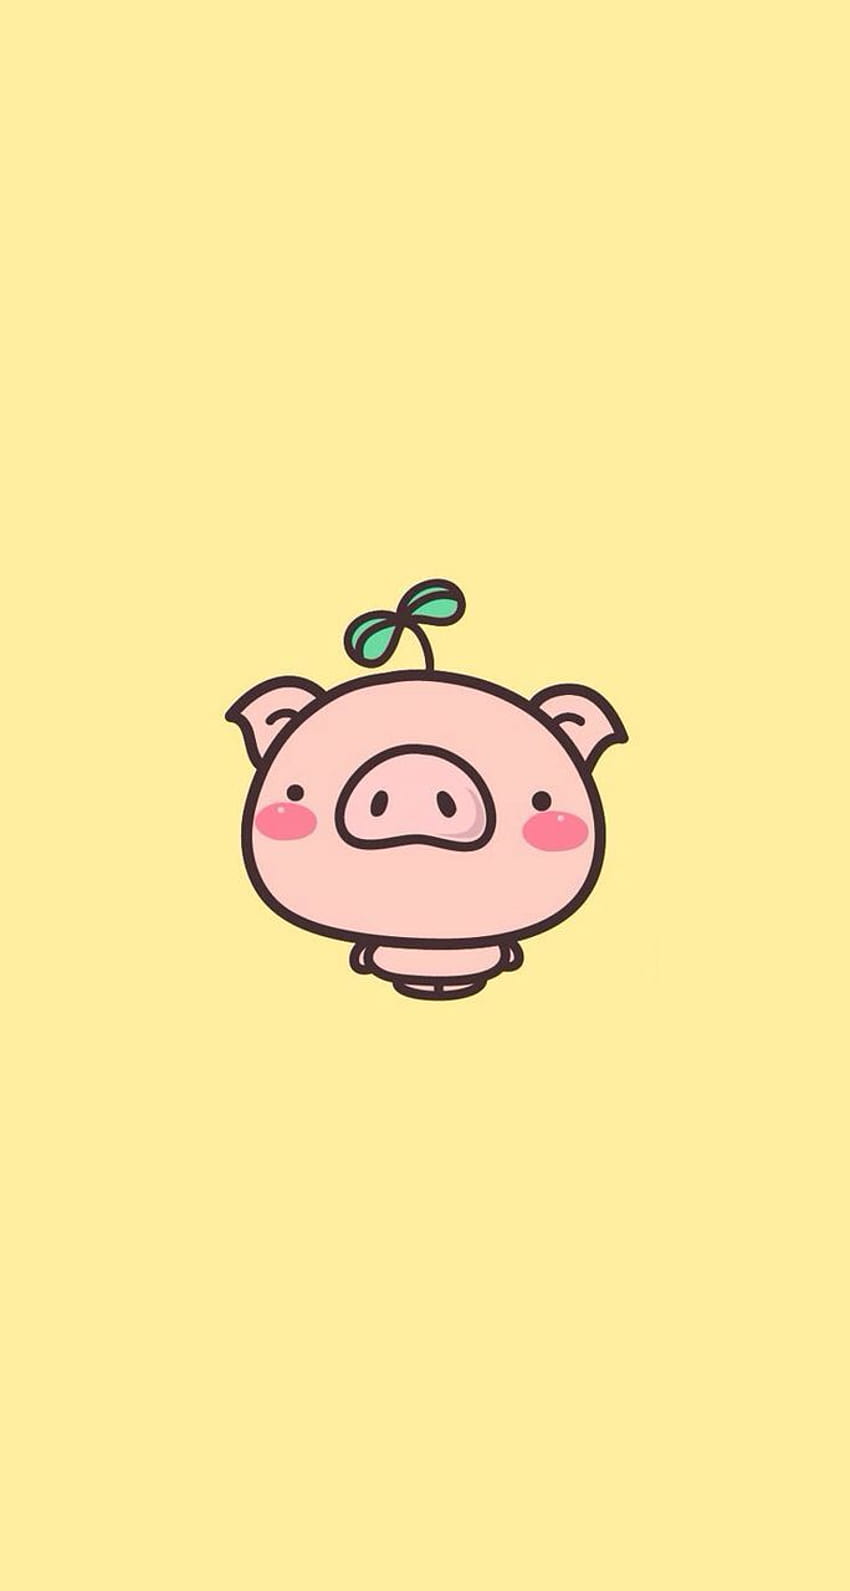 Nhìn cái hình Lợn kawaii này, ai cũng phải cười toe toét! Với đôi mắt to tròn, mũi hình trái tim và khuôn mặt nhỏ xinh, Lợn kawaii sẽ mang đến cho bạn những giây phút thư giãn vô cùng đáng yêu.